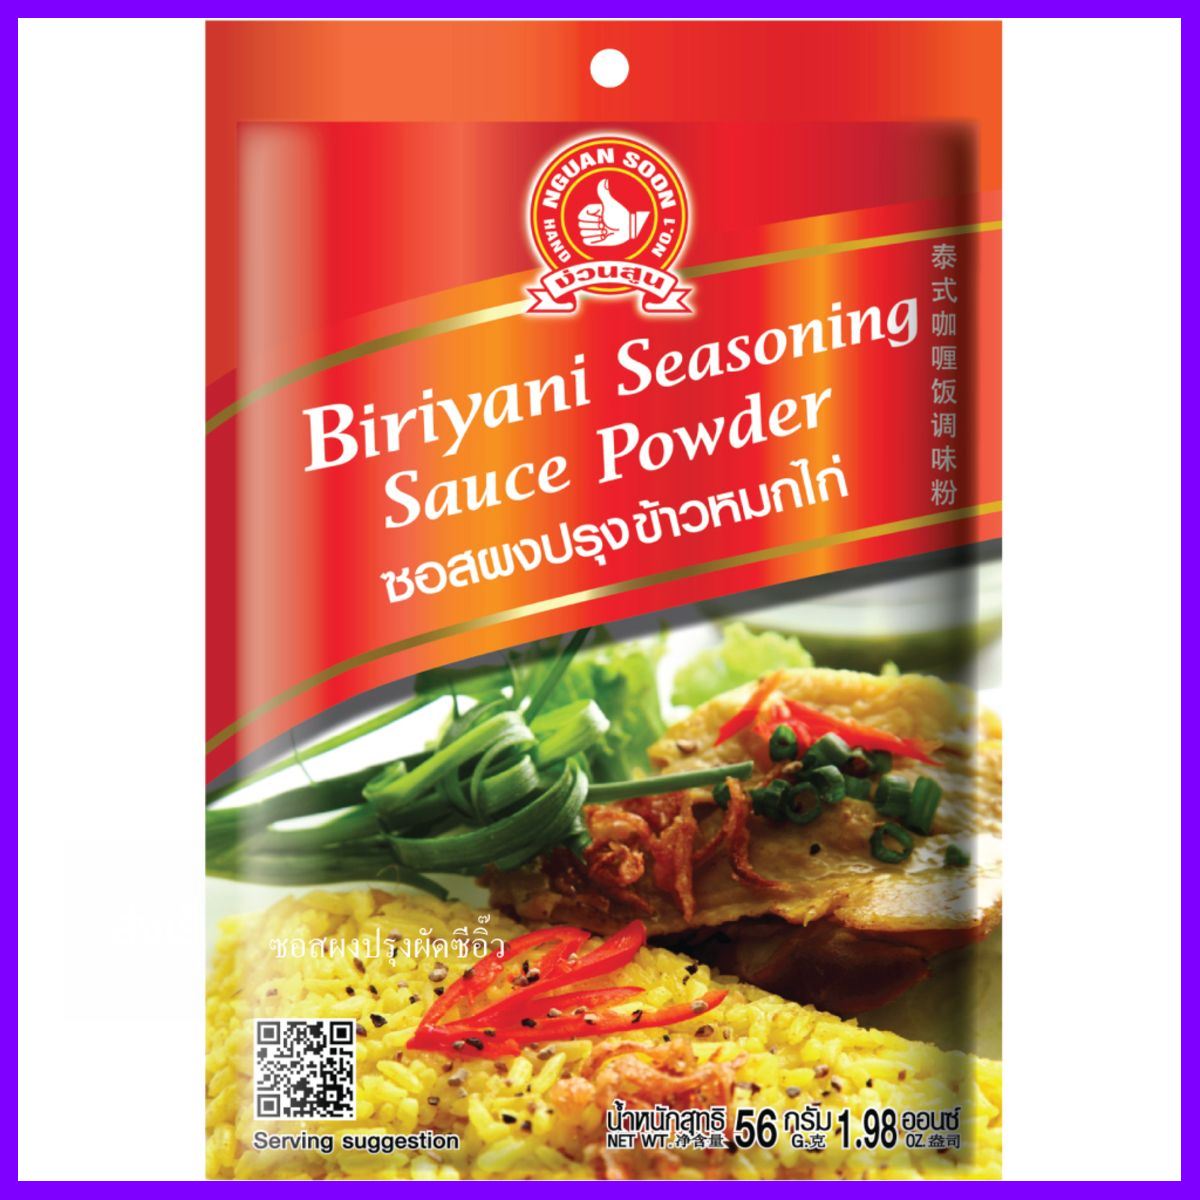 ด่วน ของมีจำนวนจำกัด Hand Brand No.1-biryani Seasoning Sauce Powder ของดีคุ้มค่า